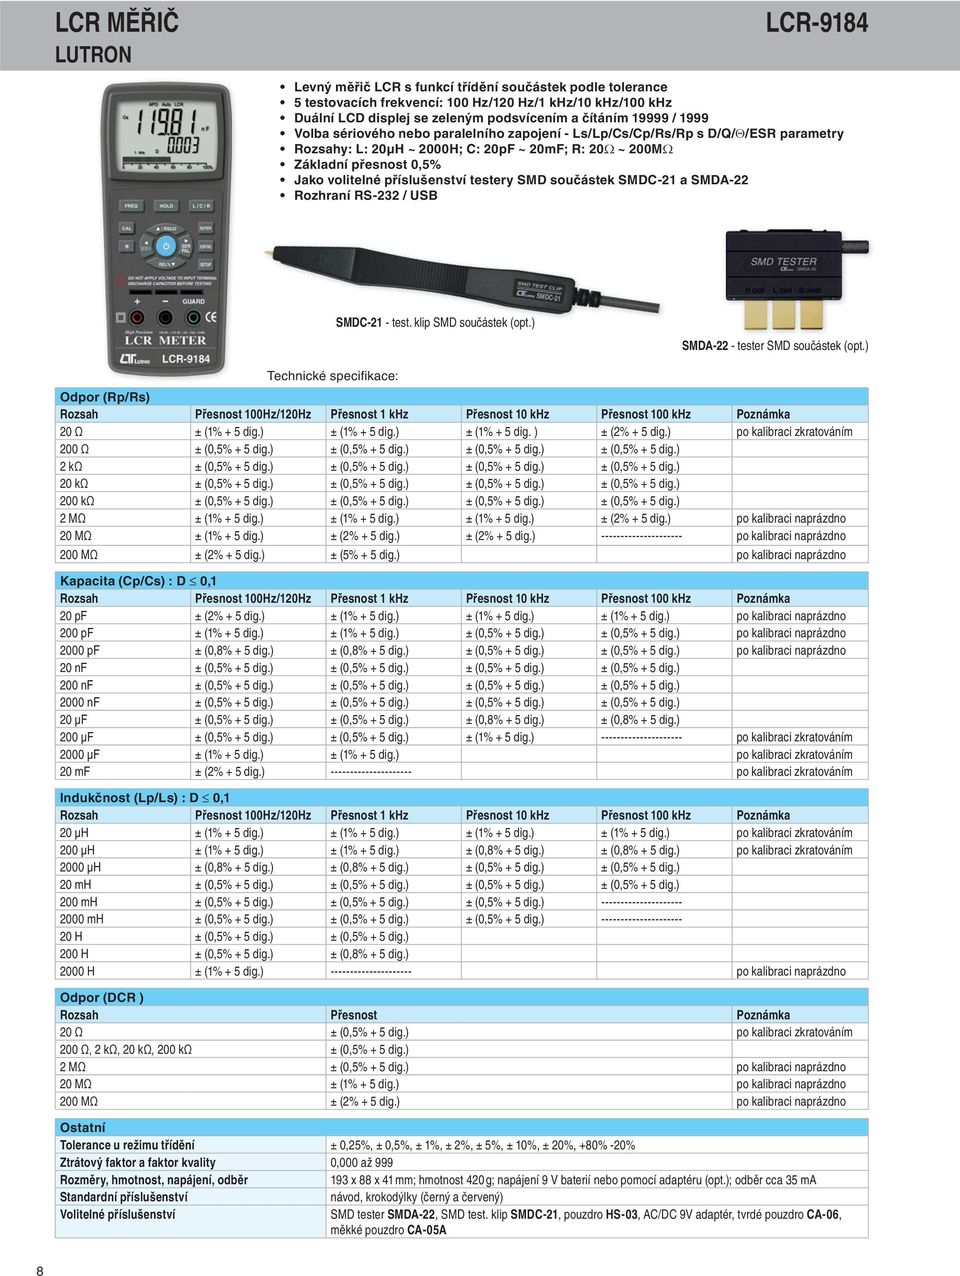 testery SMD součástek SMDC-21 a SMDA-22 Rozhraní RS-232 / USB SMDC-21 - test. klip SMD součástek (opt.) SMDA-22 - tester SMD součástek (opt.